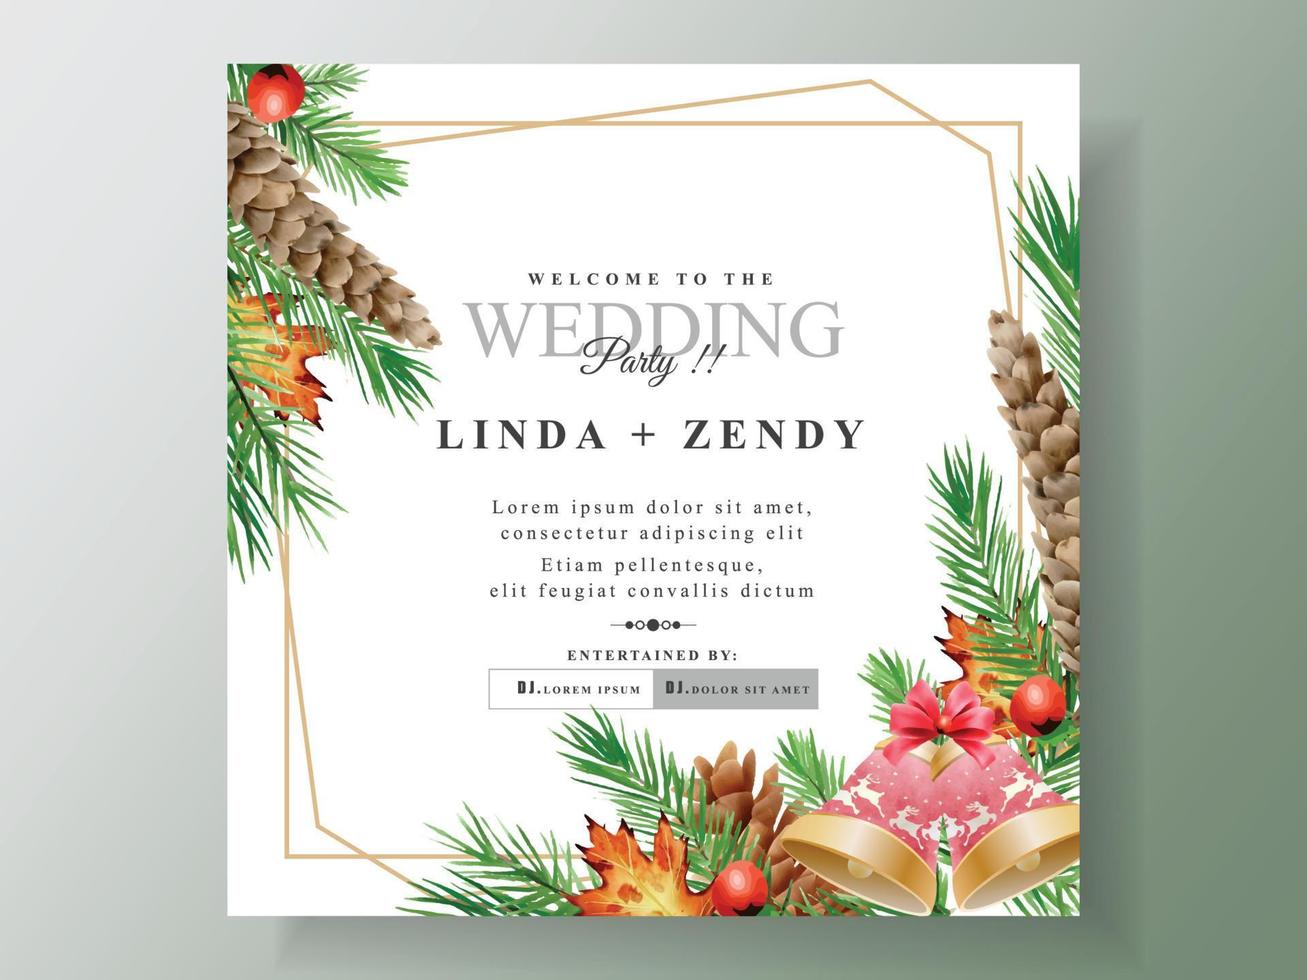 mooi bruiloft uitnodiging kaart sjabloon met Kerstmis thema vector